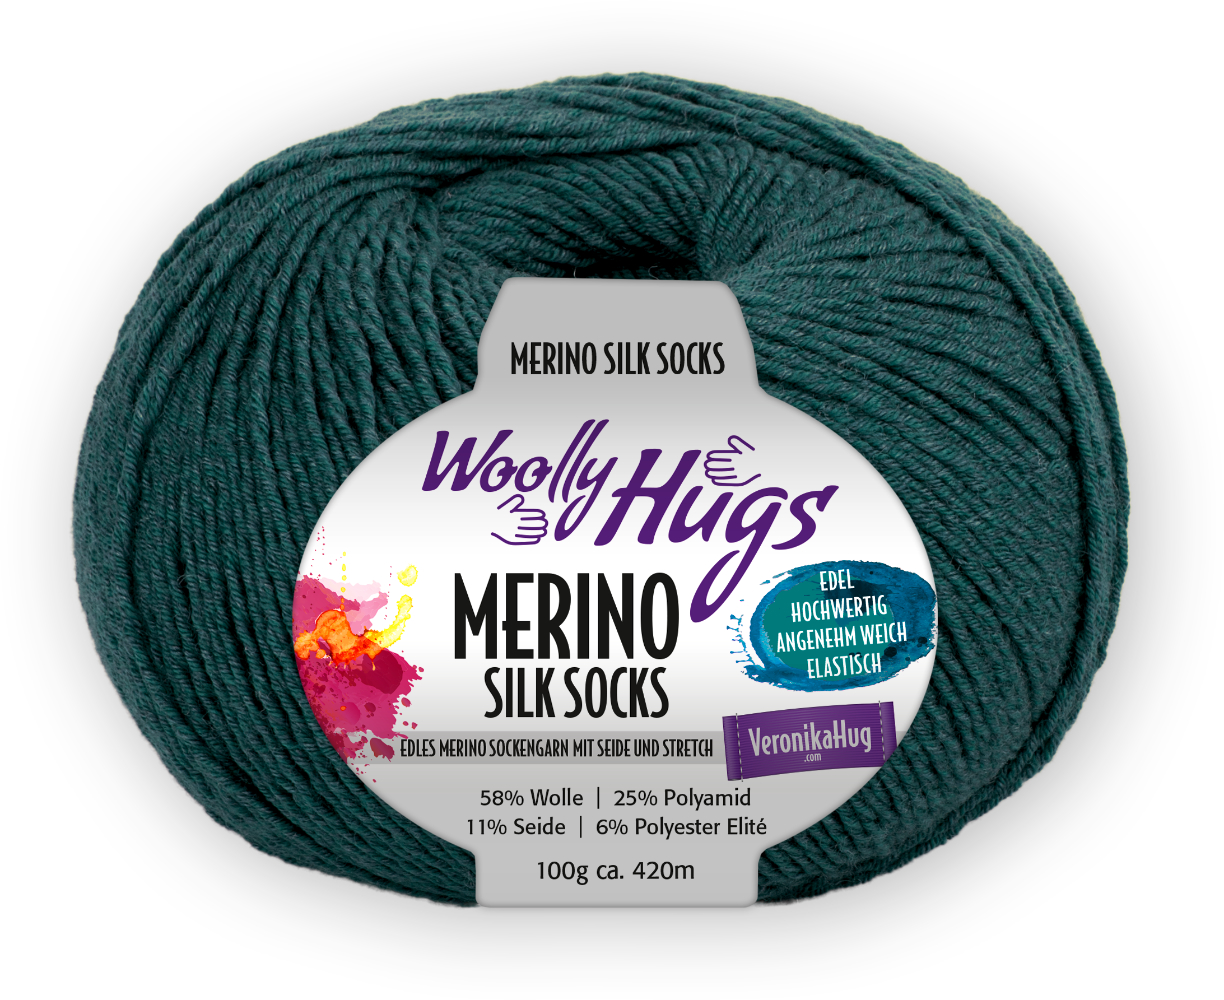 Merino Silk Socks Stretch, 4-fach von Woolly Hugs 0268 - petrol